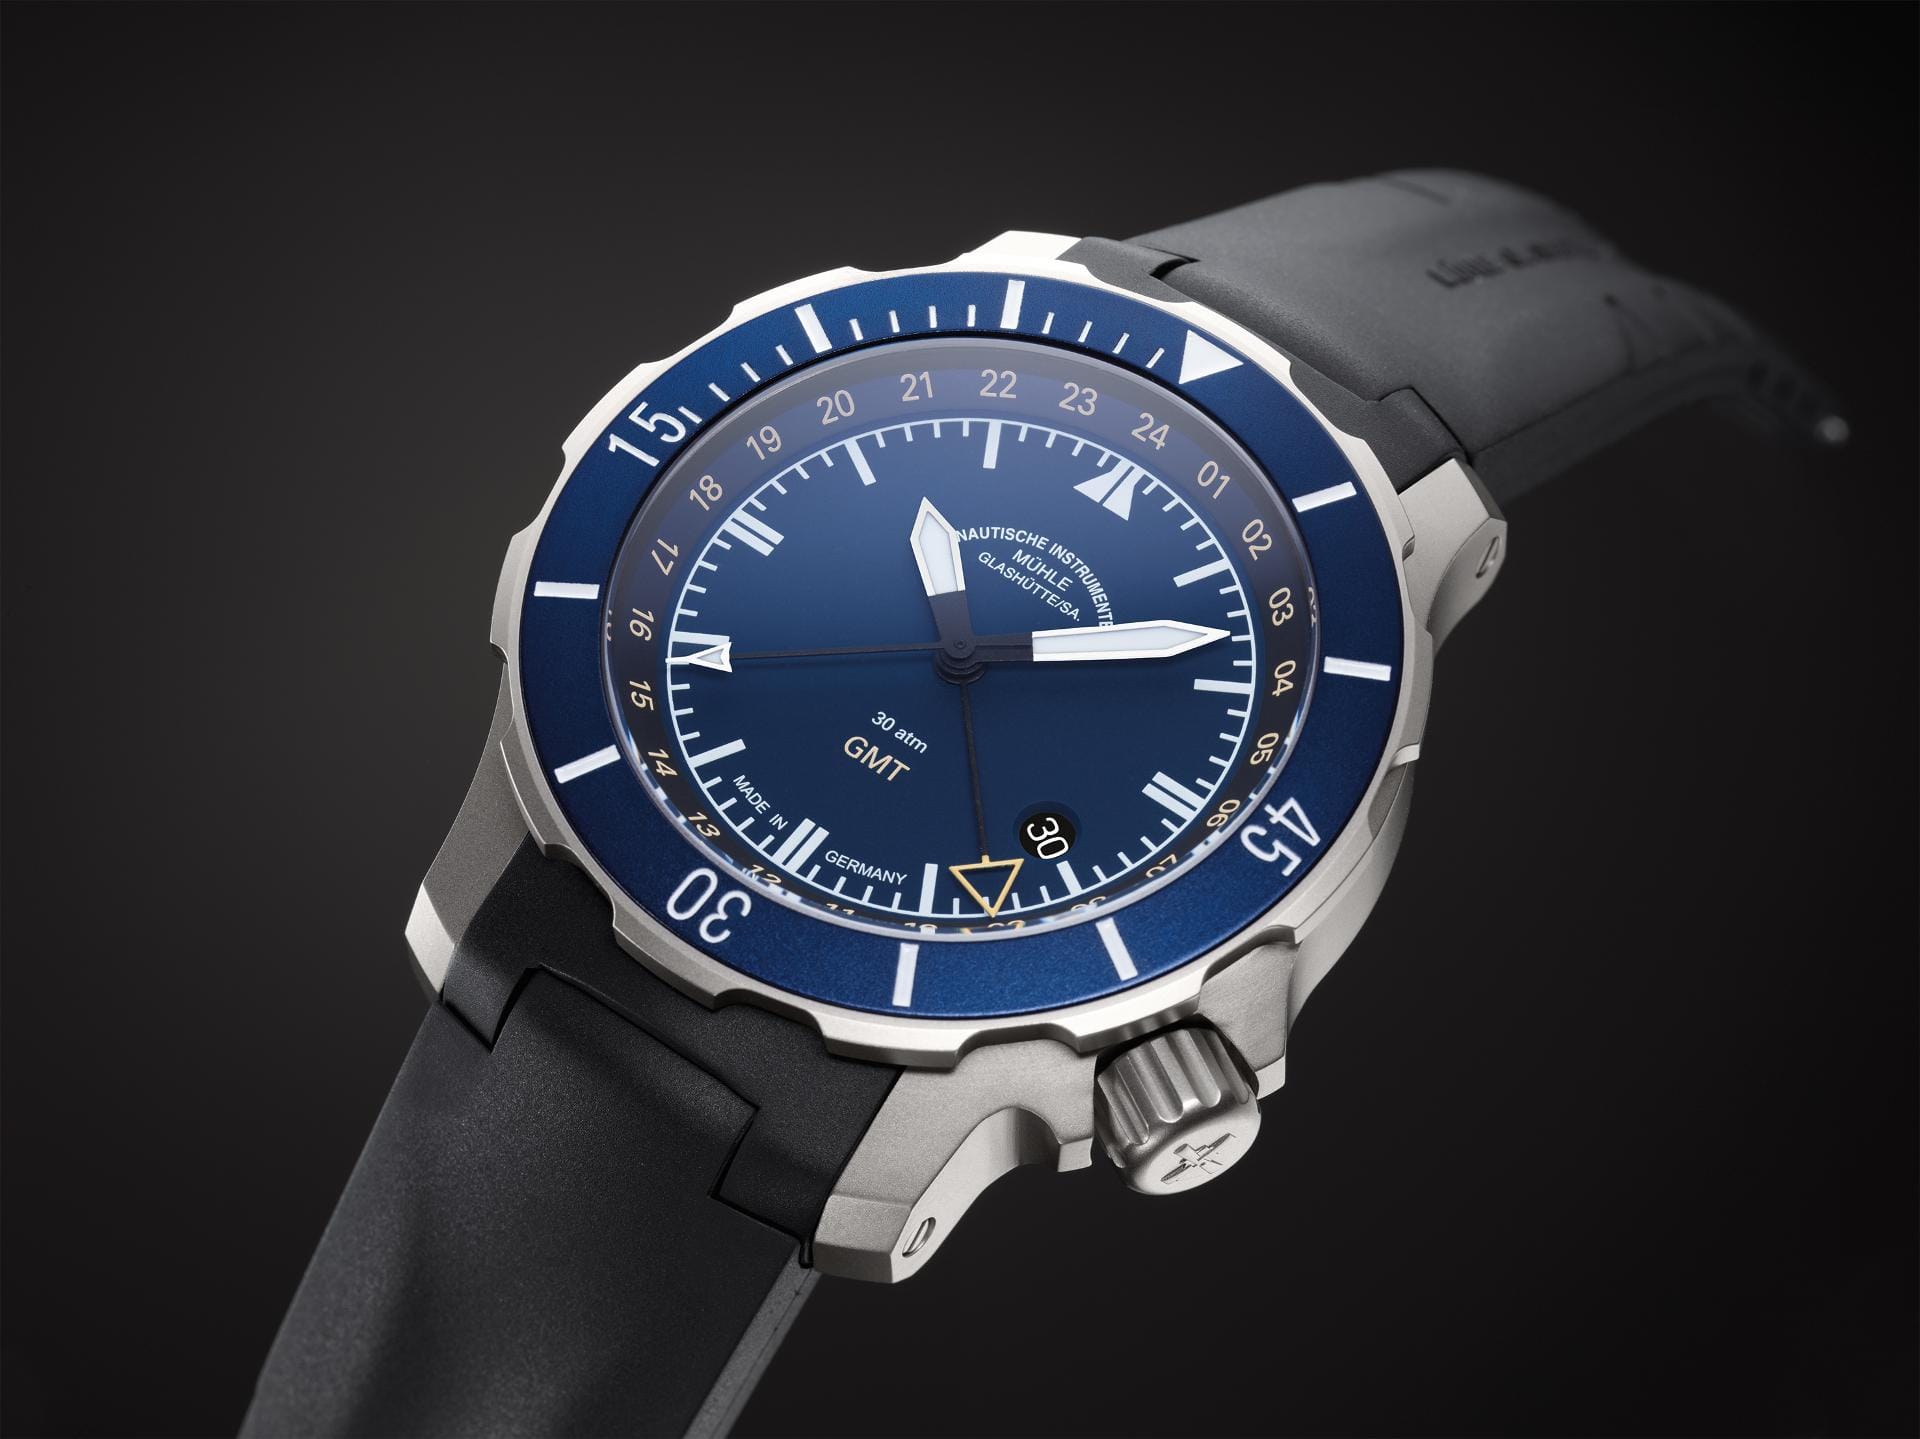 Vom Uhrenhersteller Mühle Glashütte kommt die Seebataillon GMT. Die Uhr aus Titan entwickelte der Hersteller für die Soldaten des Seebataillons der Bundeswehr. Rund 2700 Euro kostet die Uhr.